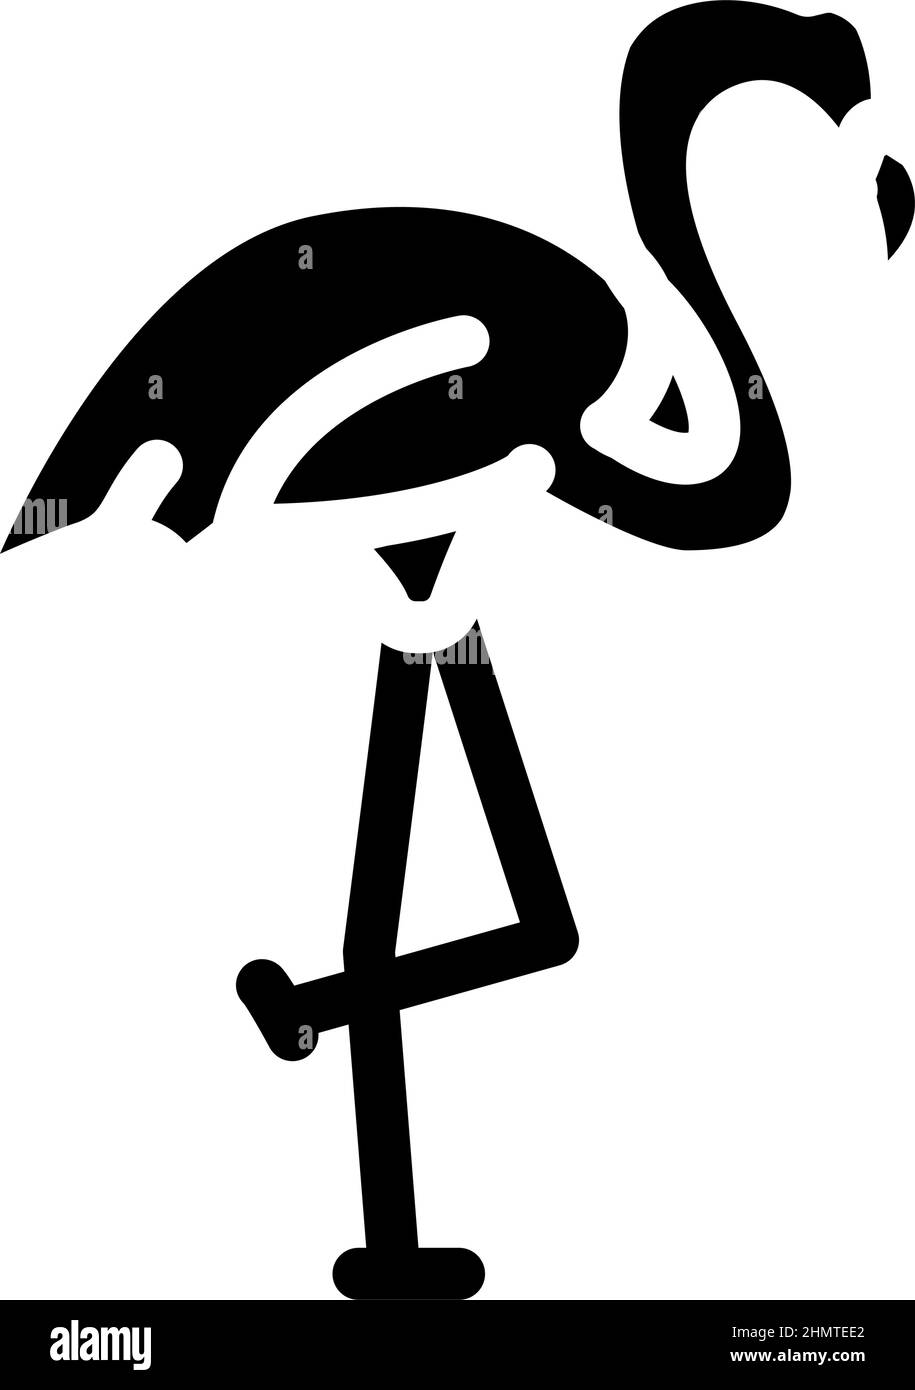 flamingo bird glyph icon vector illustration Stock Vector